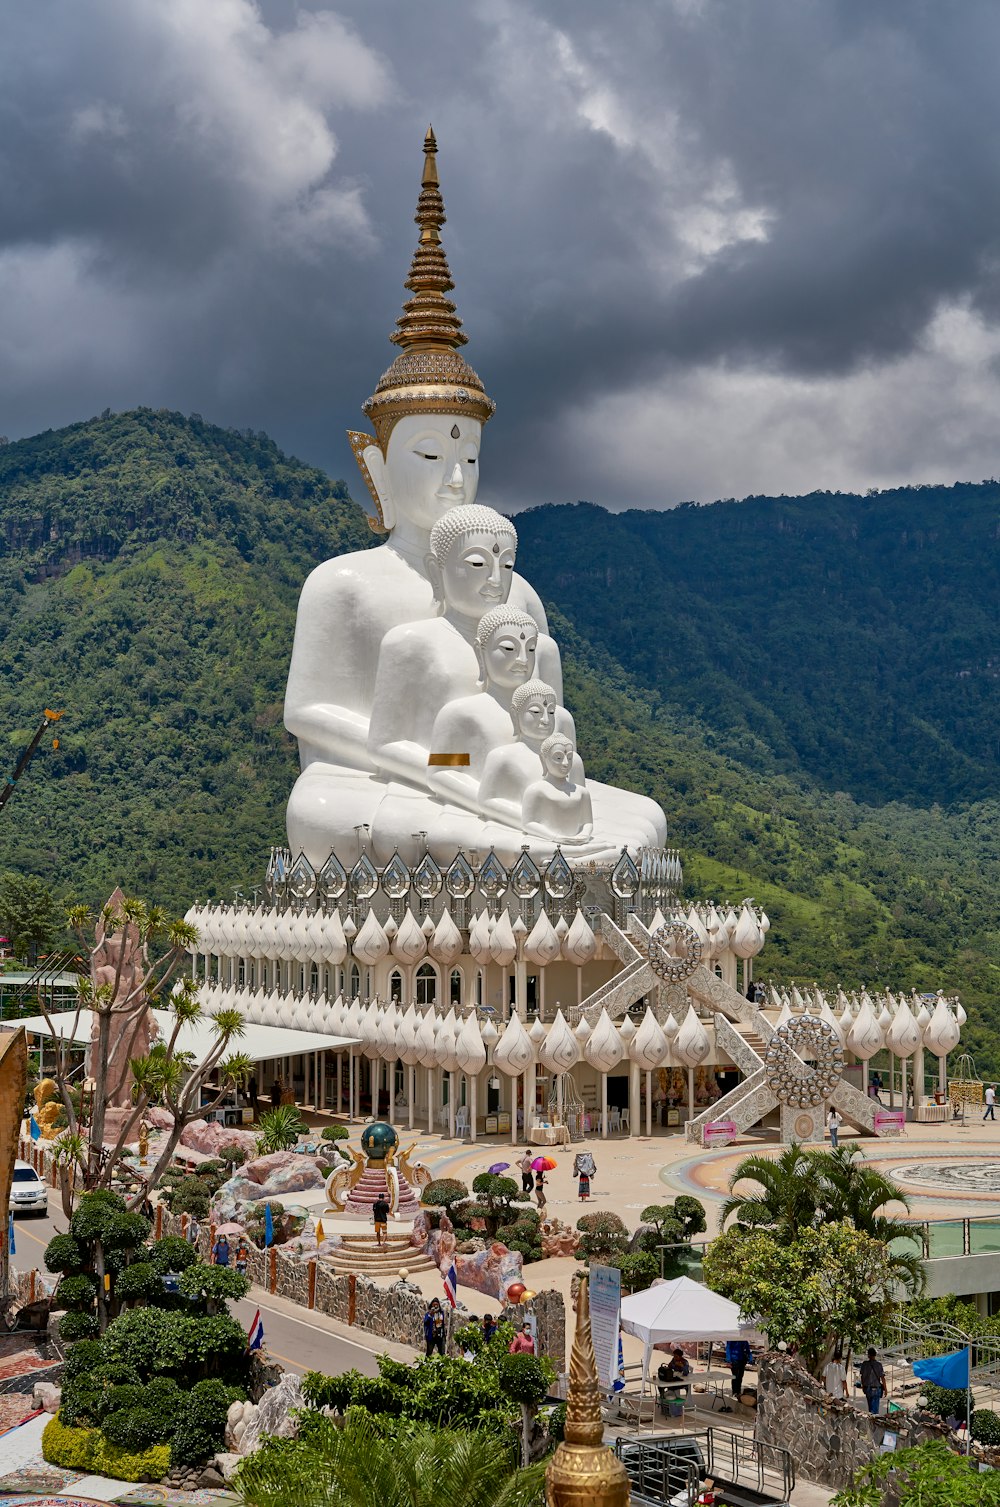 Una grande statua di Buddha bianco seduta in cima a una collina verde lussureggiante